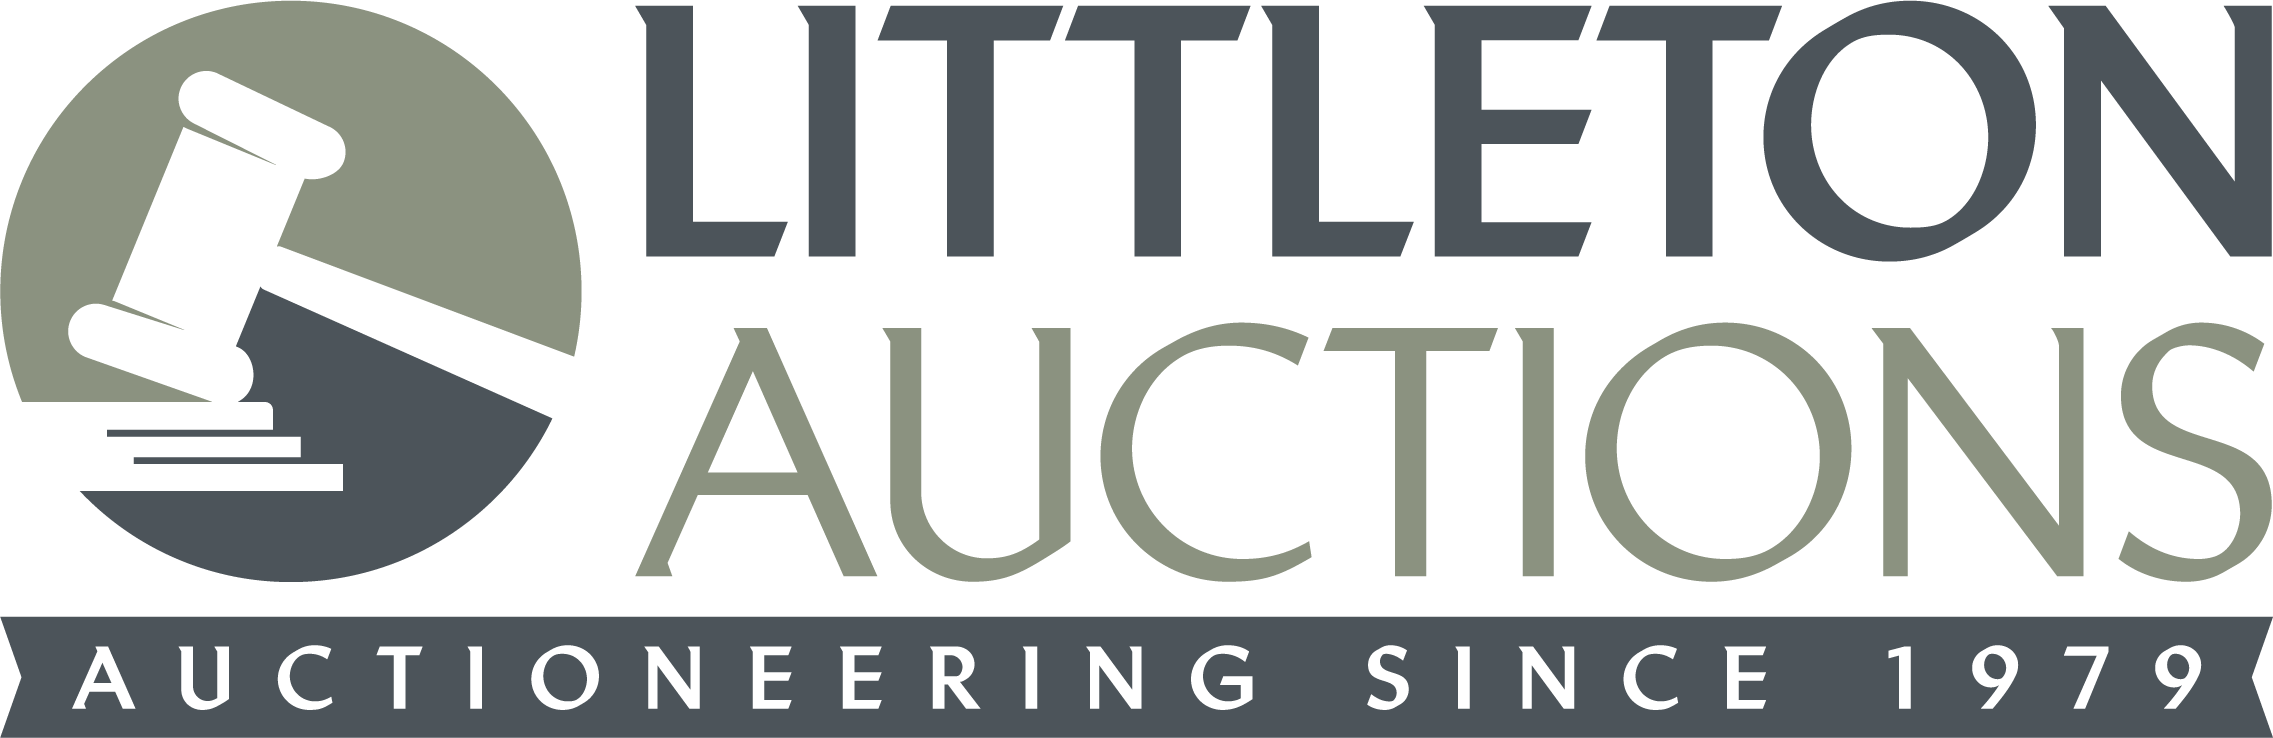 Littleton Auctions